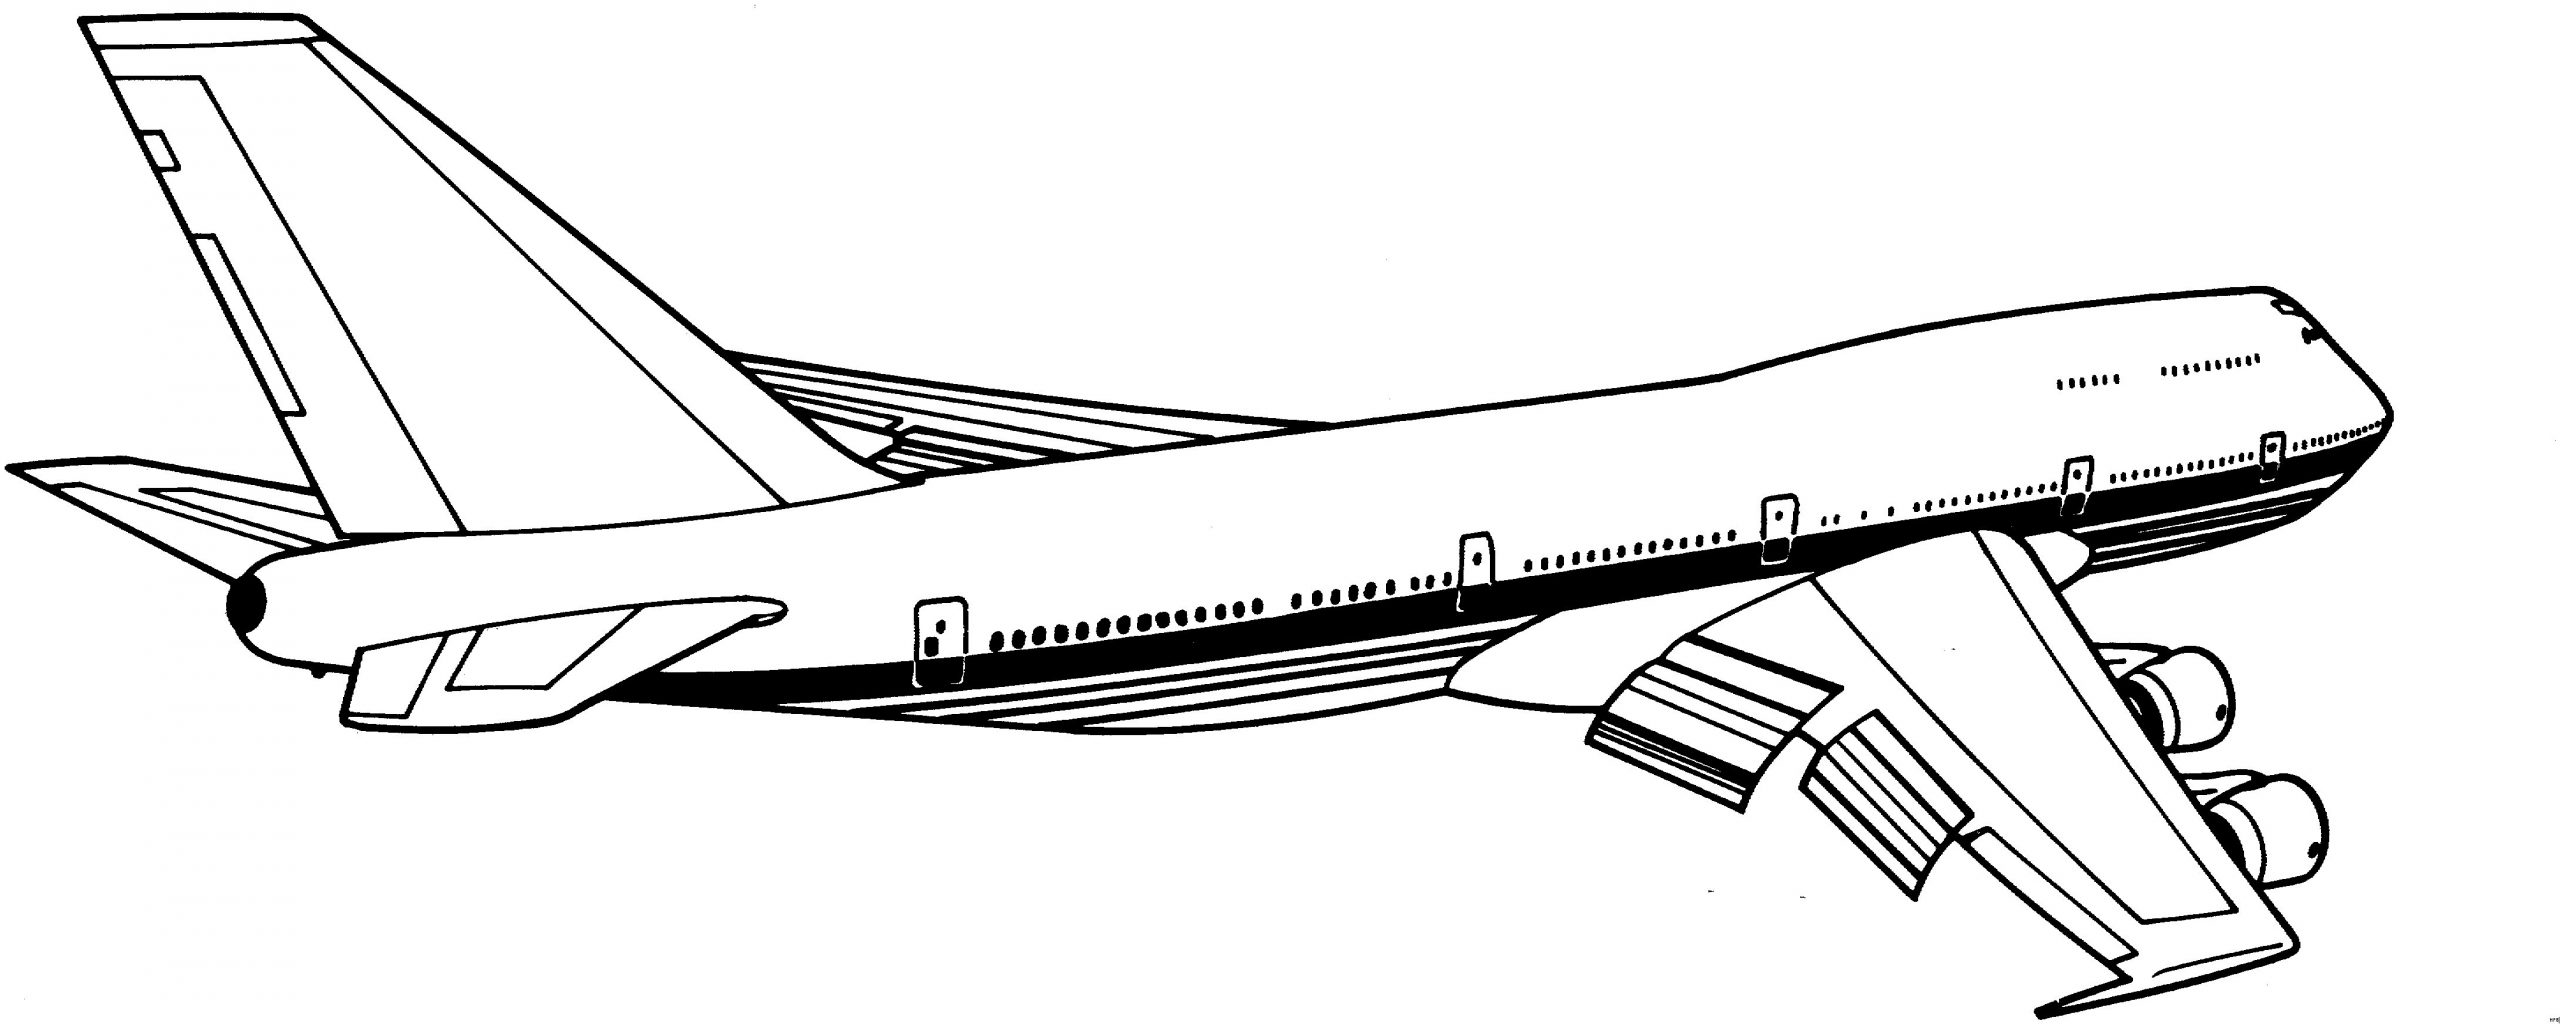 Malvorlagen Flugzeug Für Kinder Malvorlagen Flugzeug verwandt mit Malvorlage Flugzeug